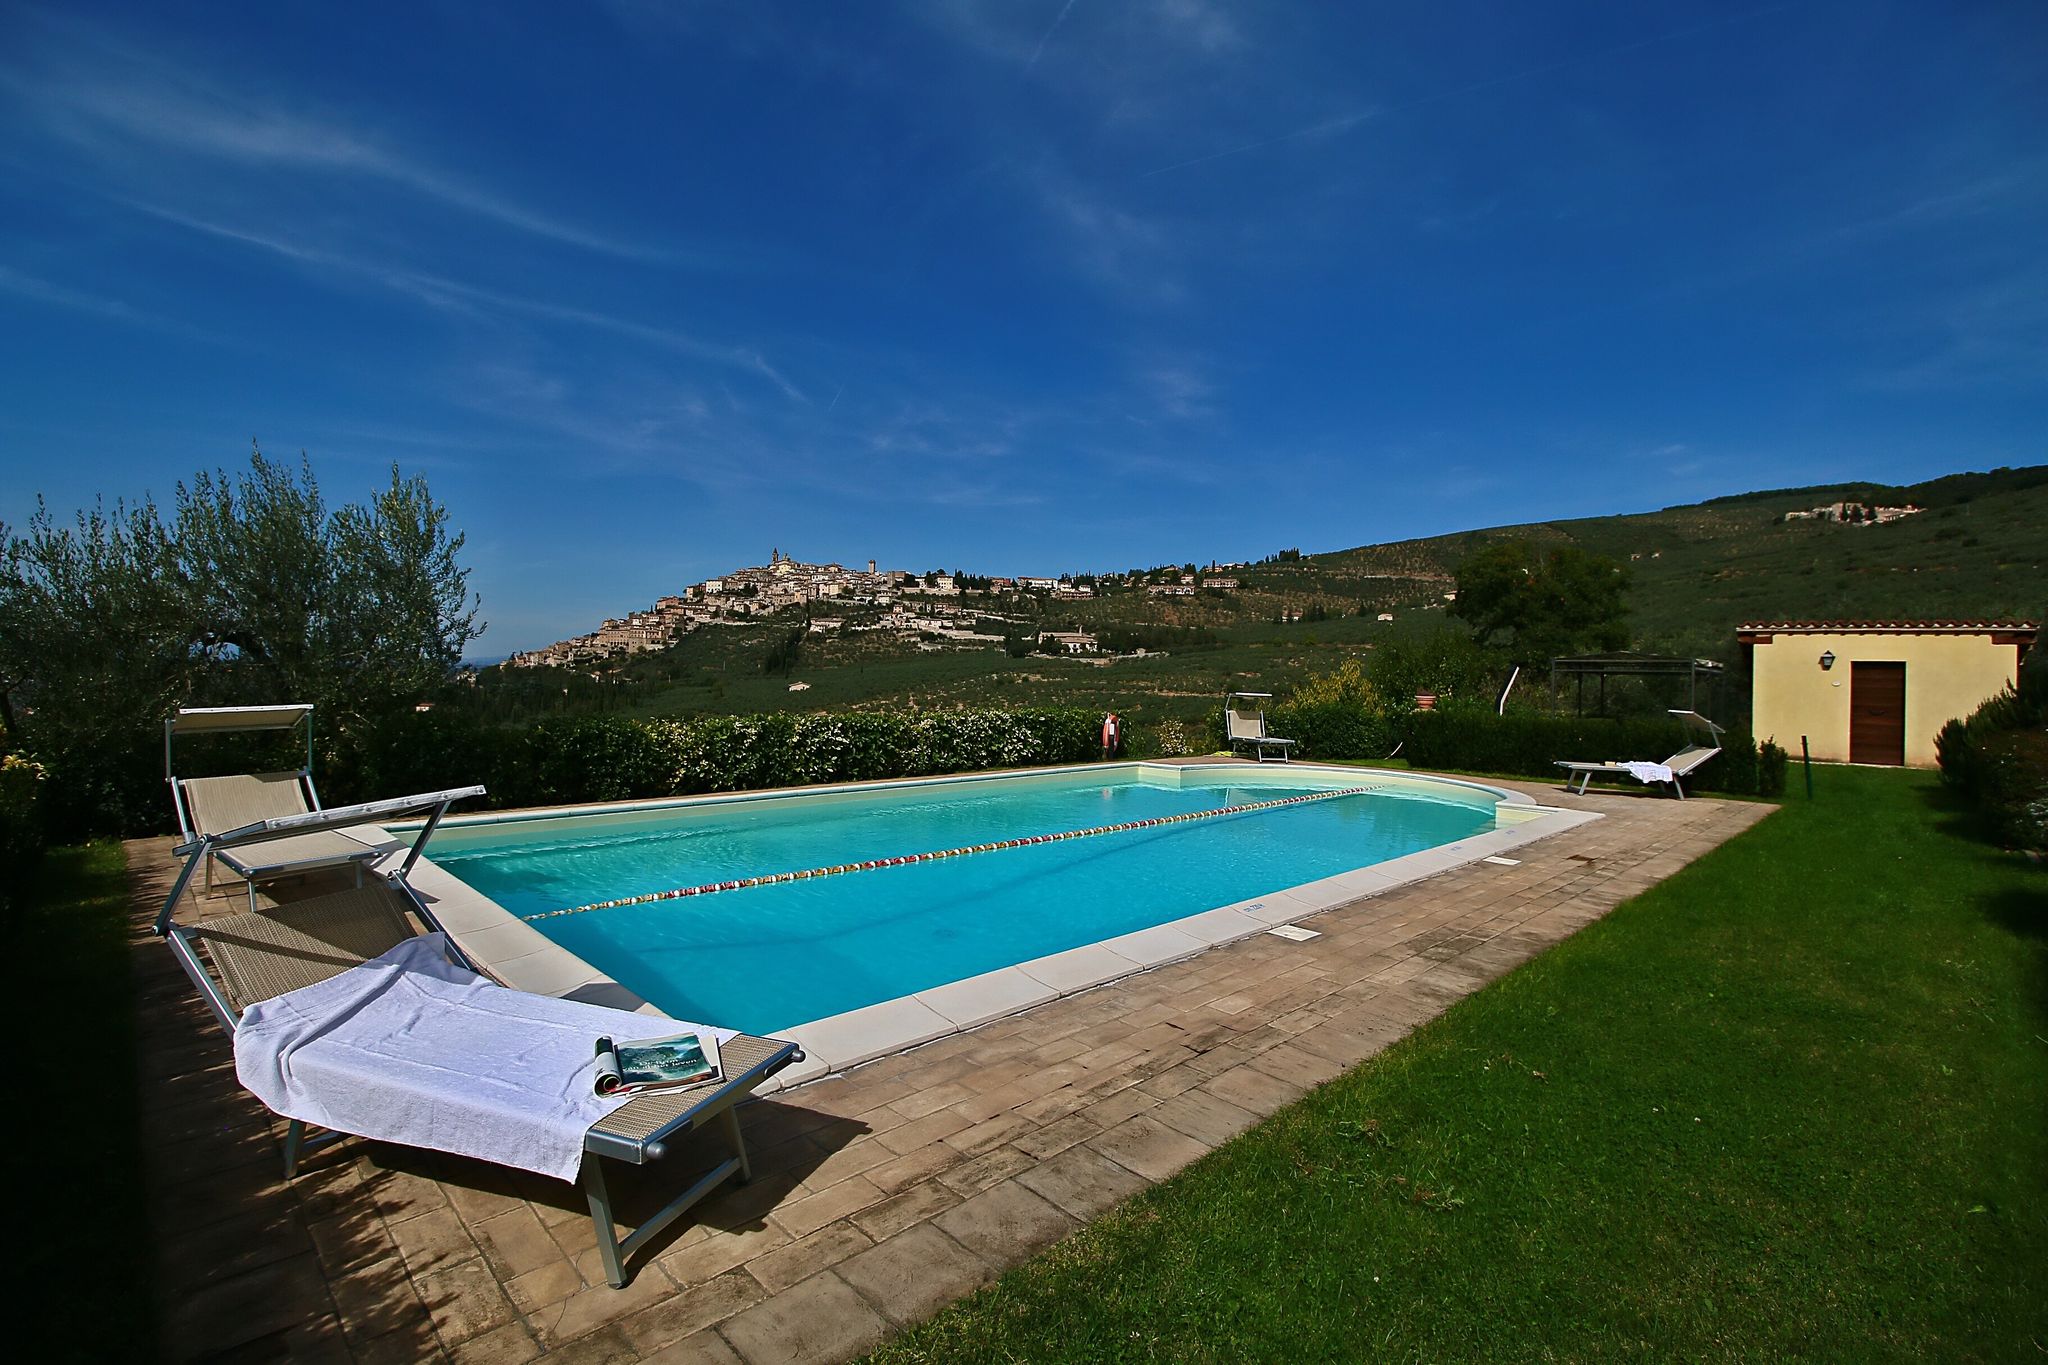 Maison de campagne confortable avec piscine à Trevi